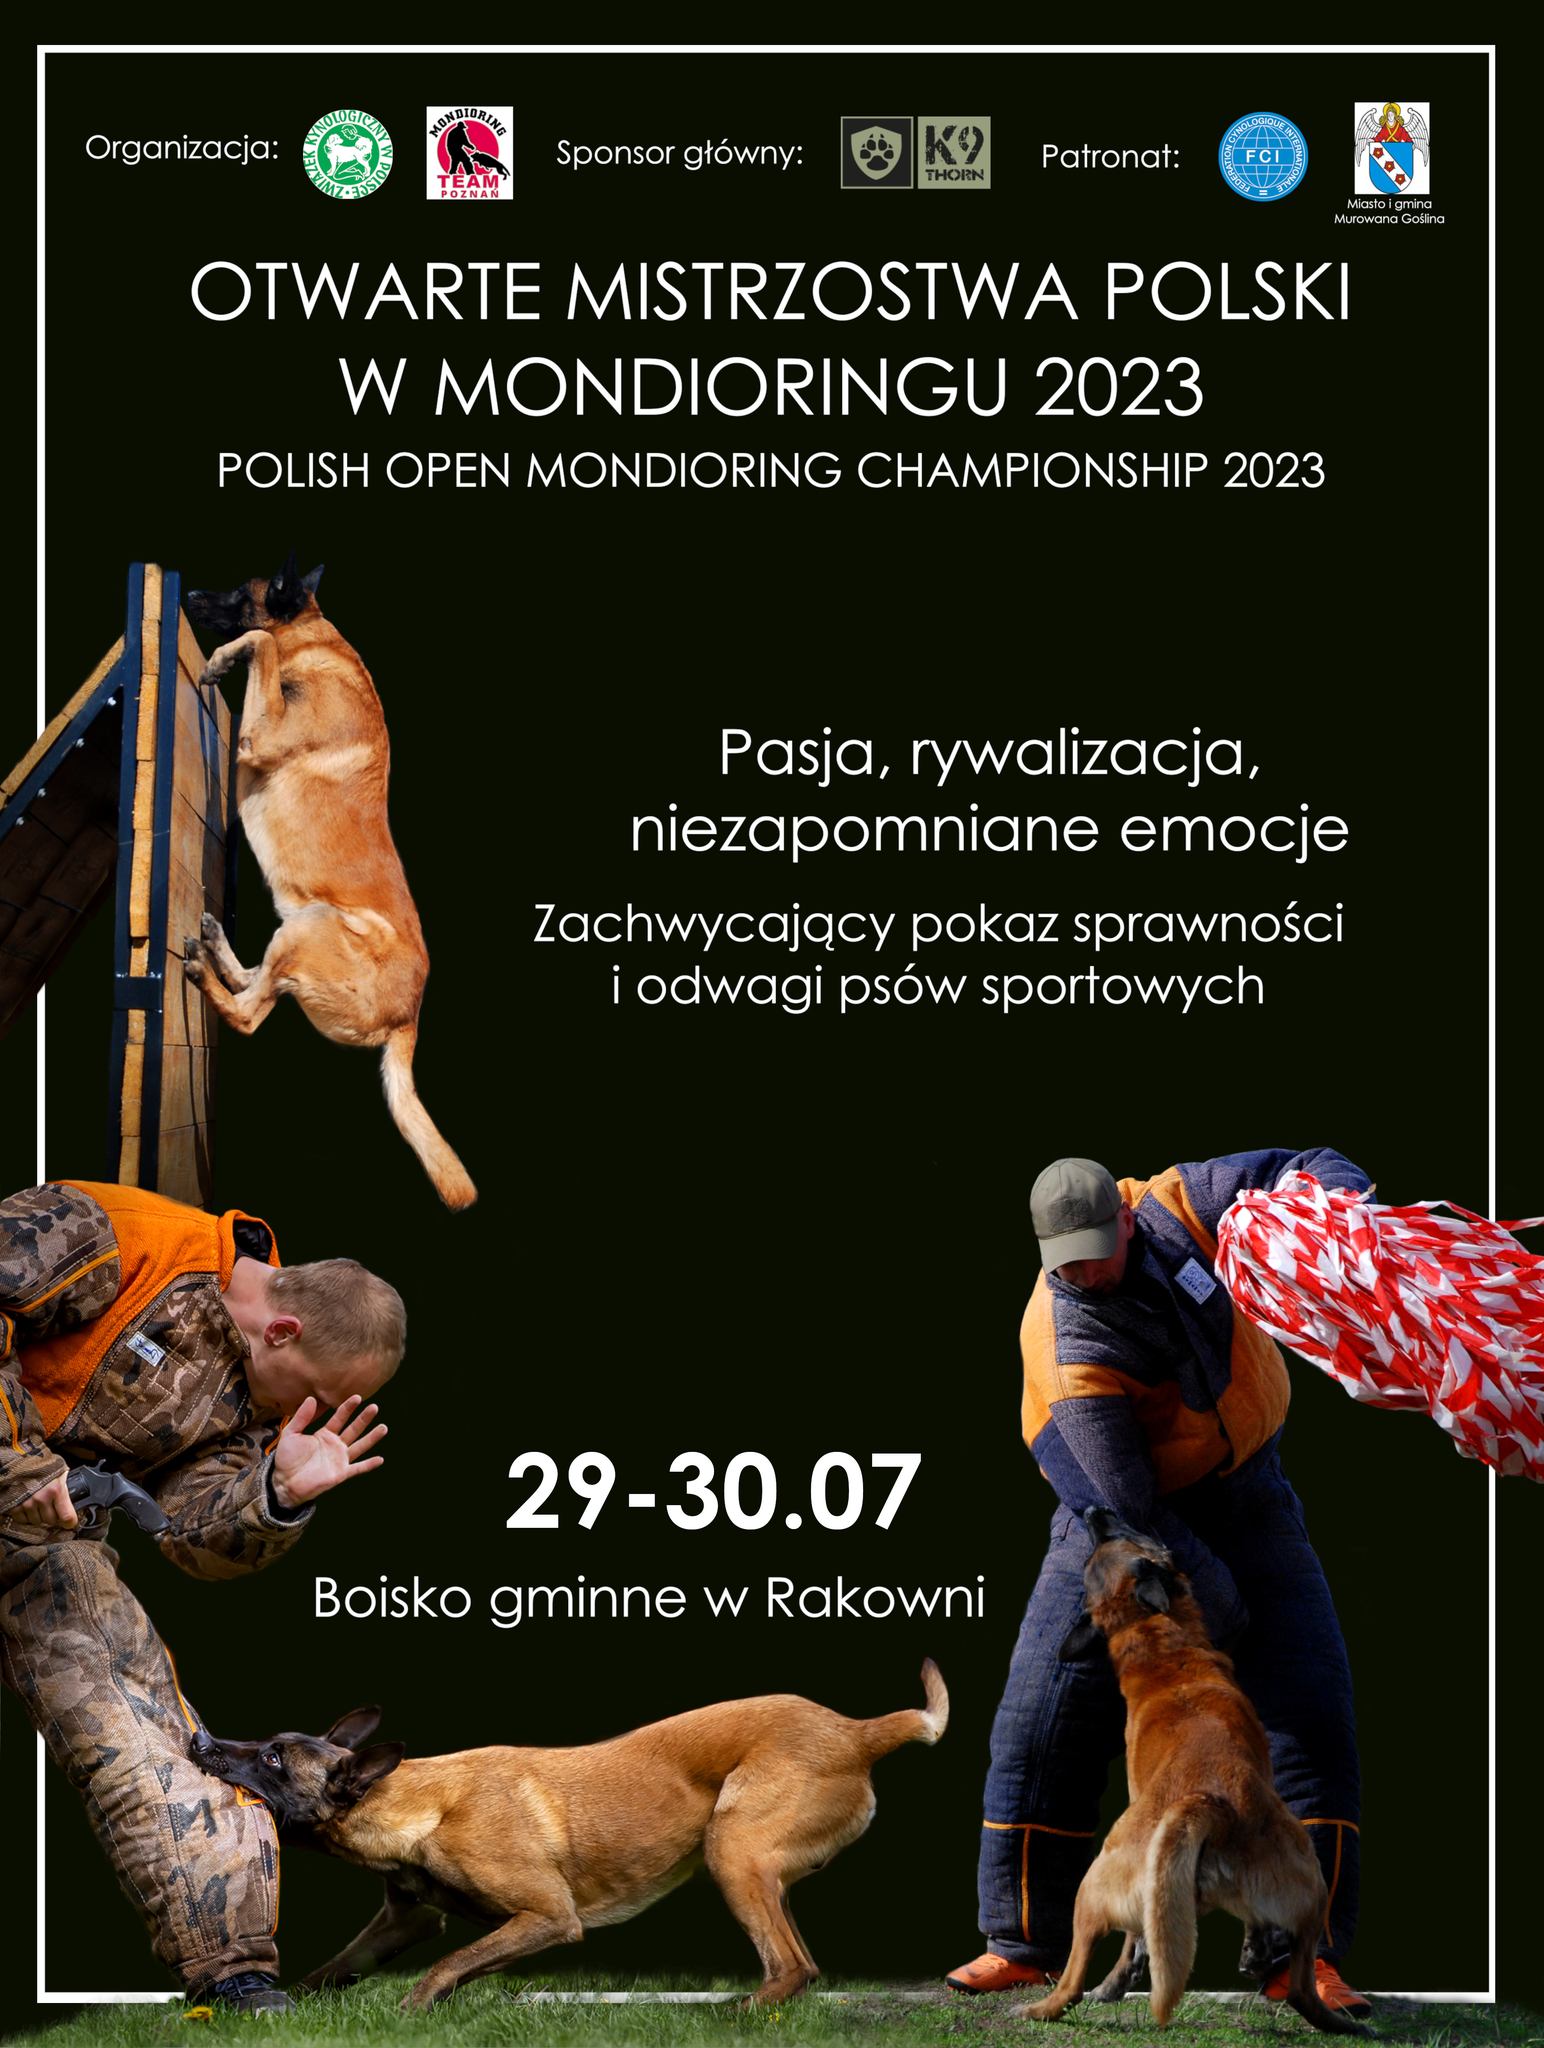 Otwarte Mistrzostwa Polski w Mondioringu, na zdjęciu- pies przeskakuje przez przeszkodę oraz psy pozorujące walkę z człowiekiem